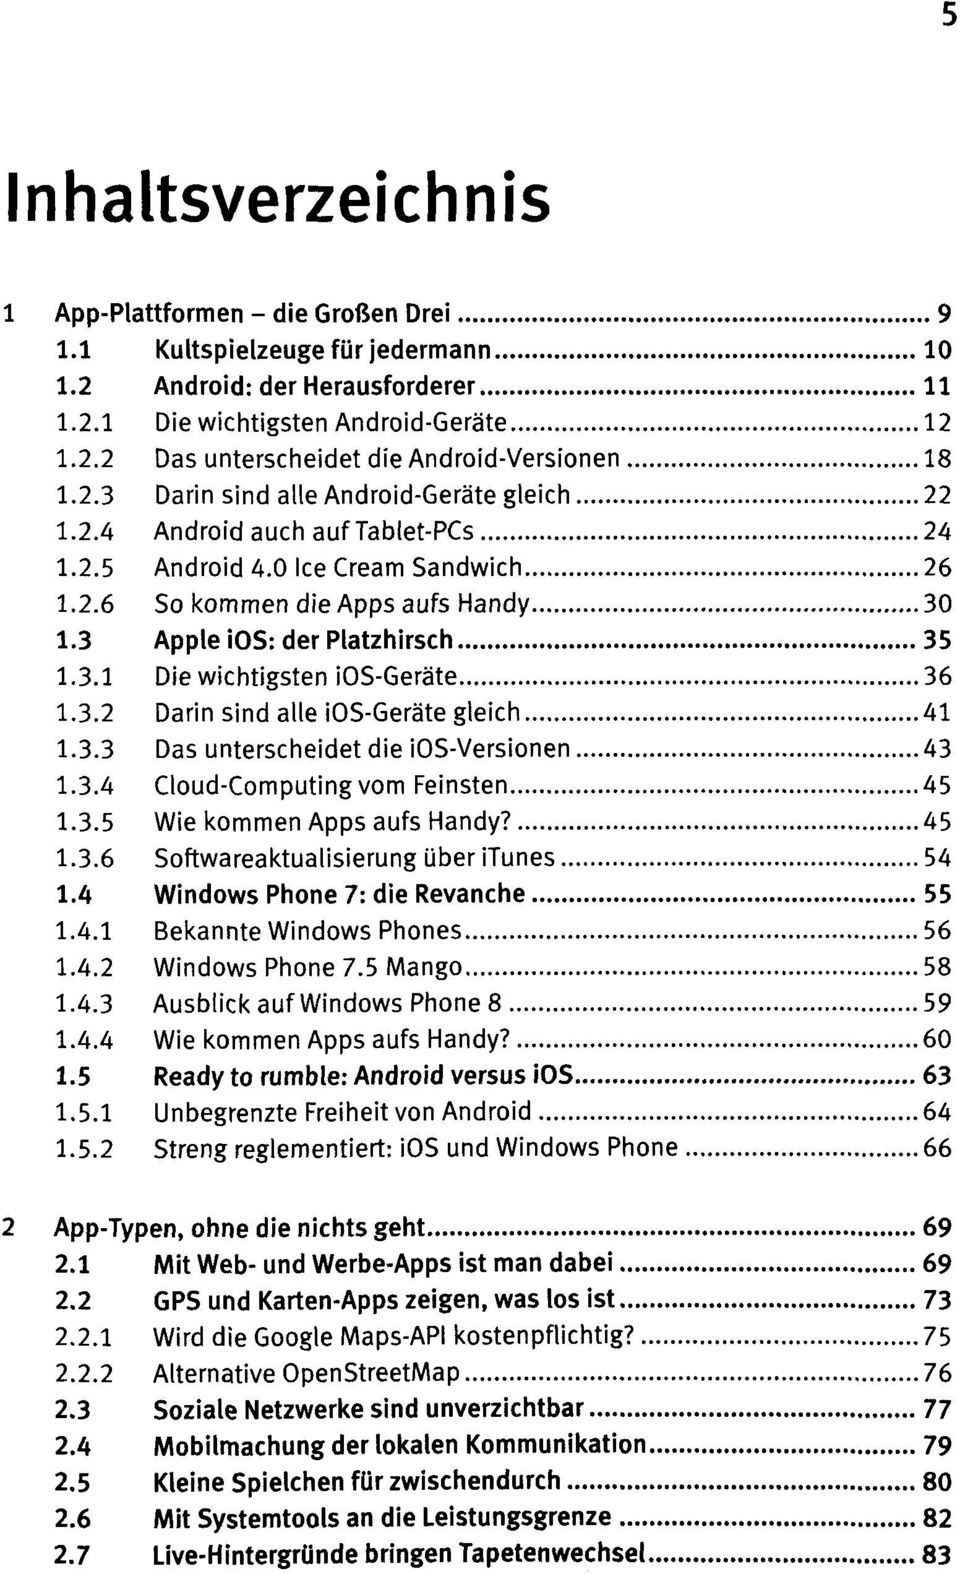 3.2 Darin sind alle ios-geräte gleich 41 1.3.3 Das unterscheidet die ios-versionen 43 1.3.4 Feinsten 45 1.3.5 Wie kommen Apps aufs Handy? 45 1.3.6 Softwareaktualisierung über itunes 54 1.